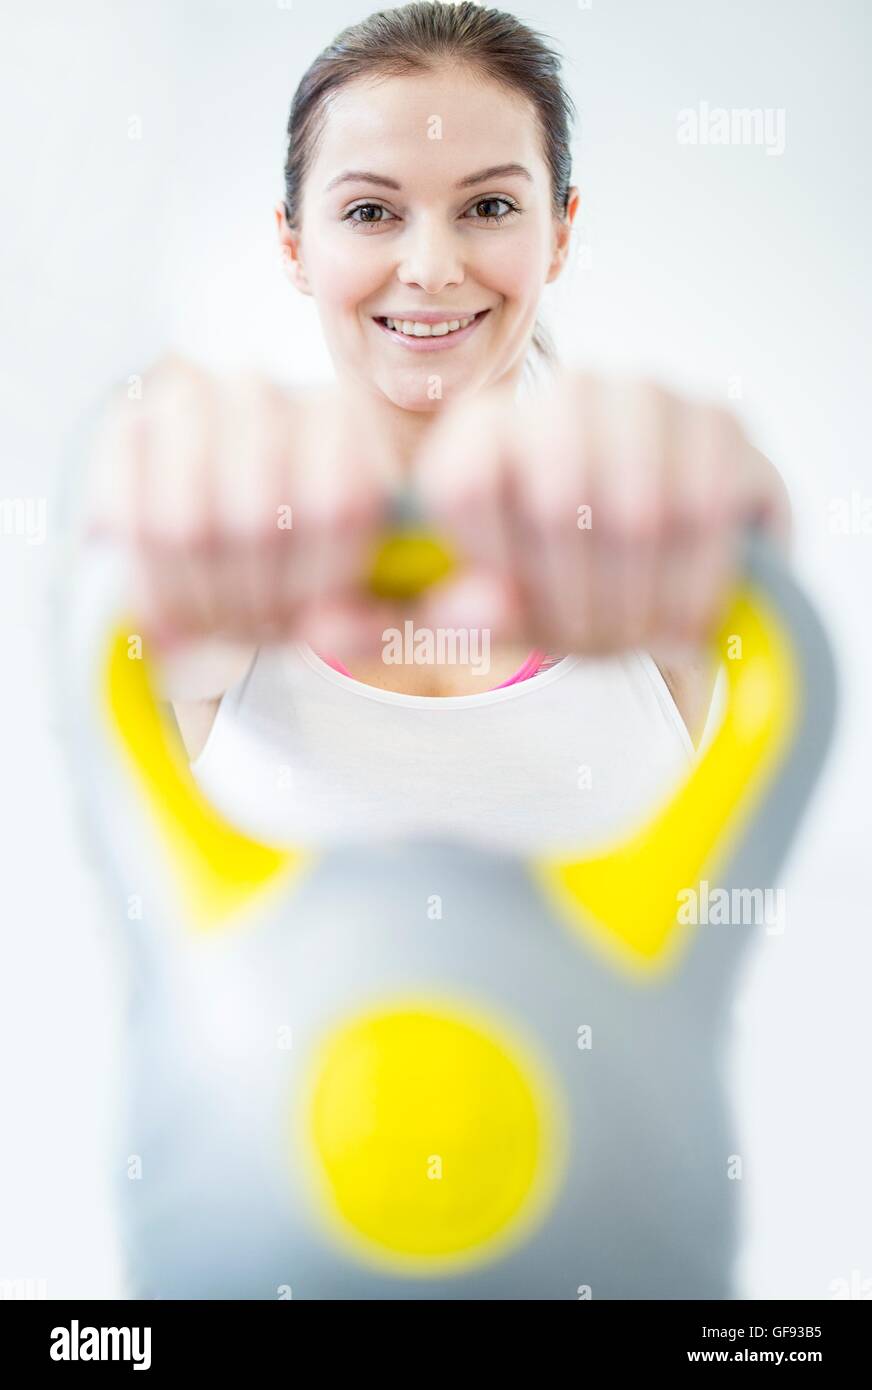 Proprietà rilasciato. Modello rilasciato. Sorridente giovane donna che lavora fuori con kettlebell in palestra, ritratto. Foto Stock